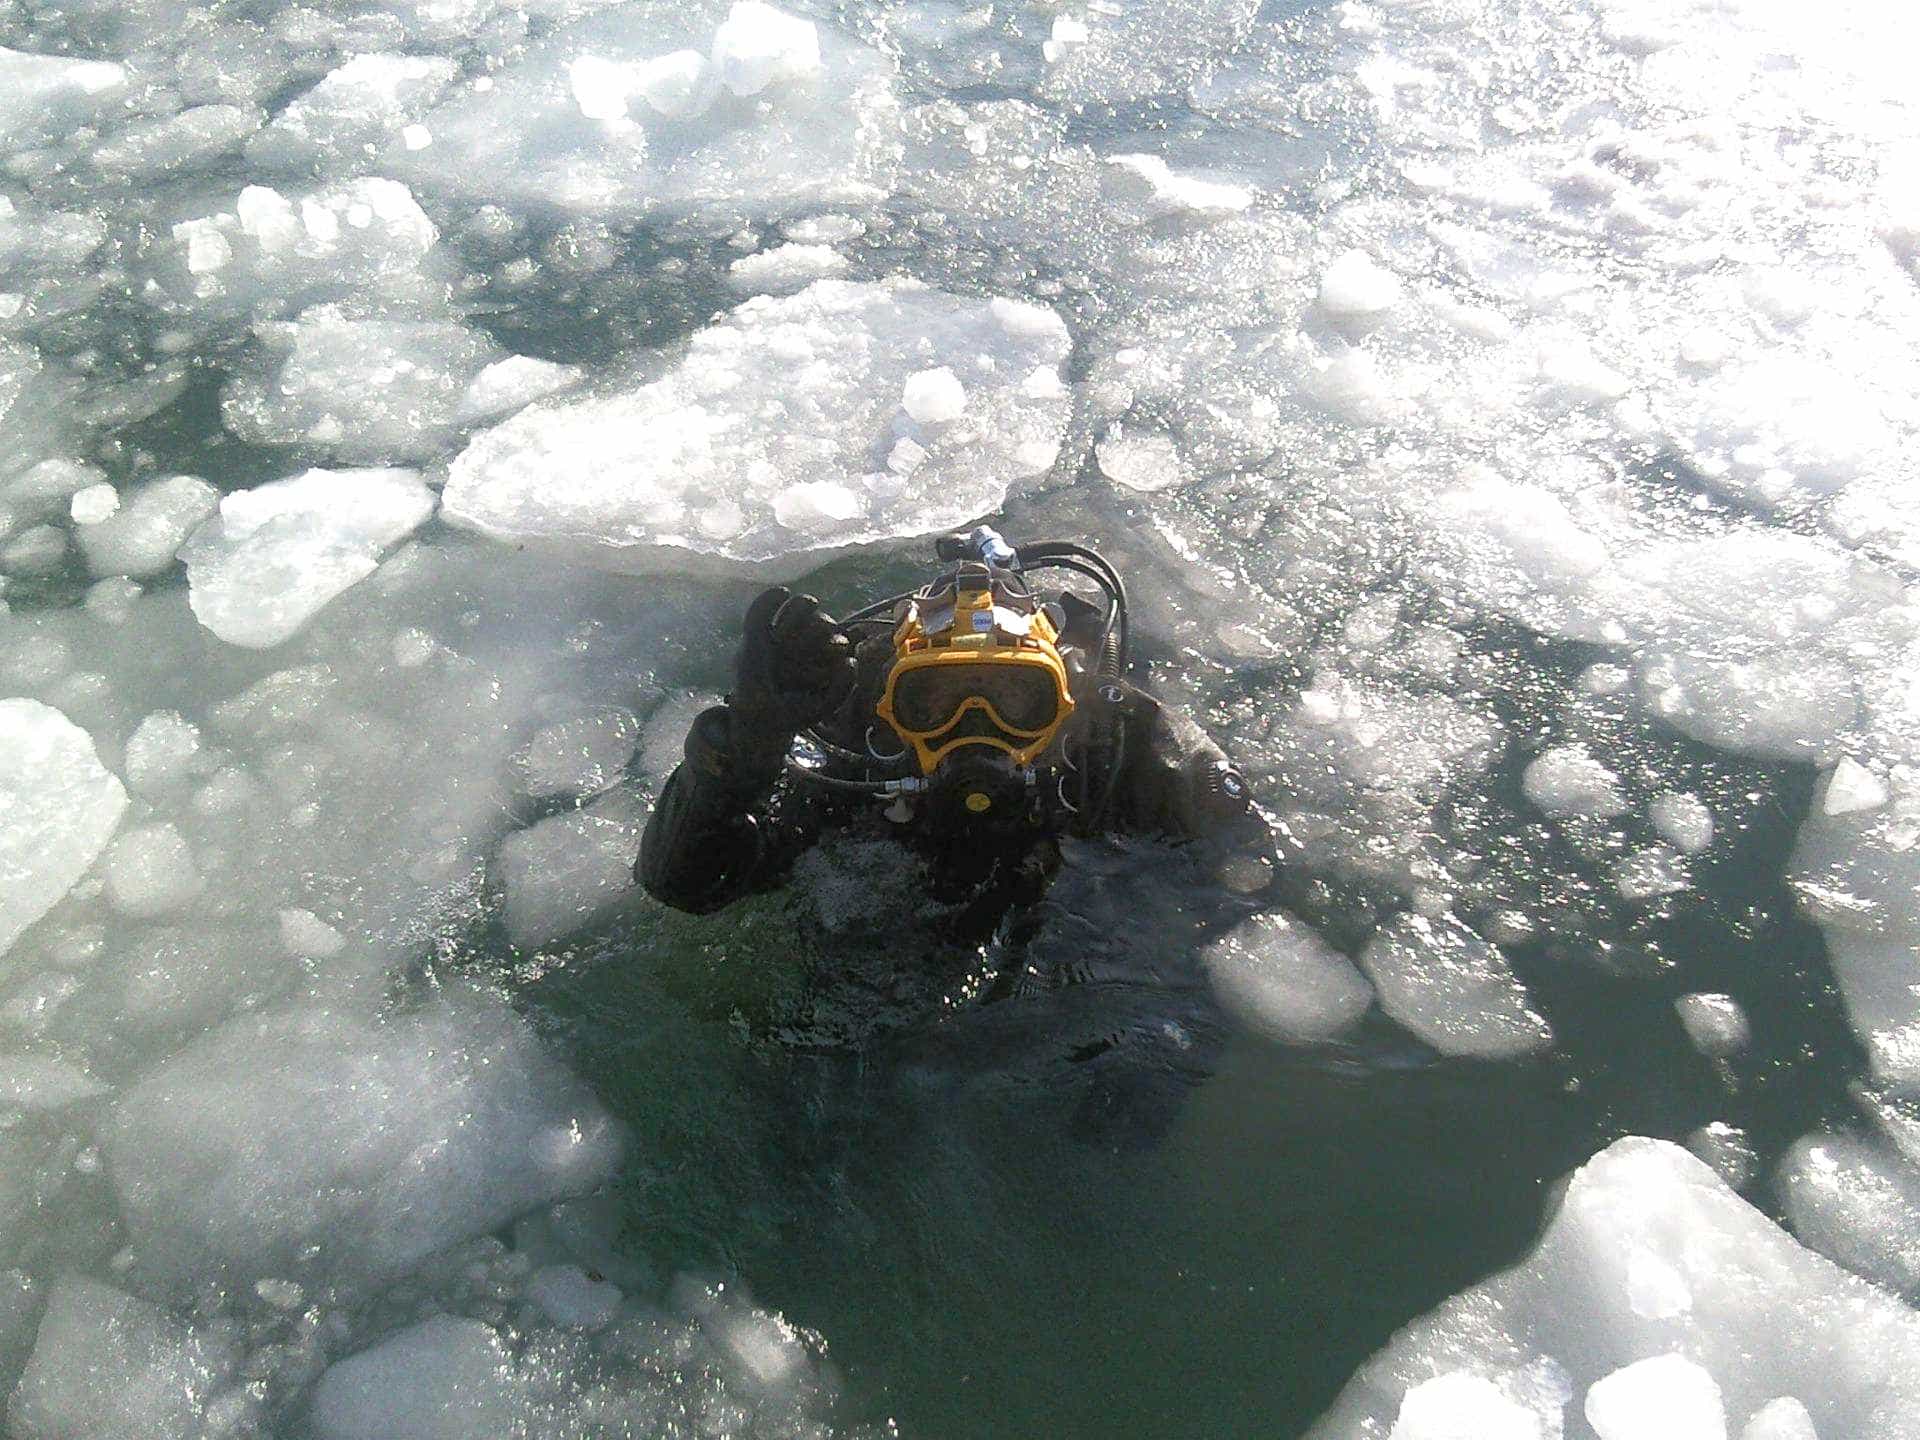 Helmet diver diving in ice.